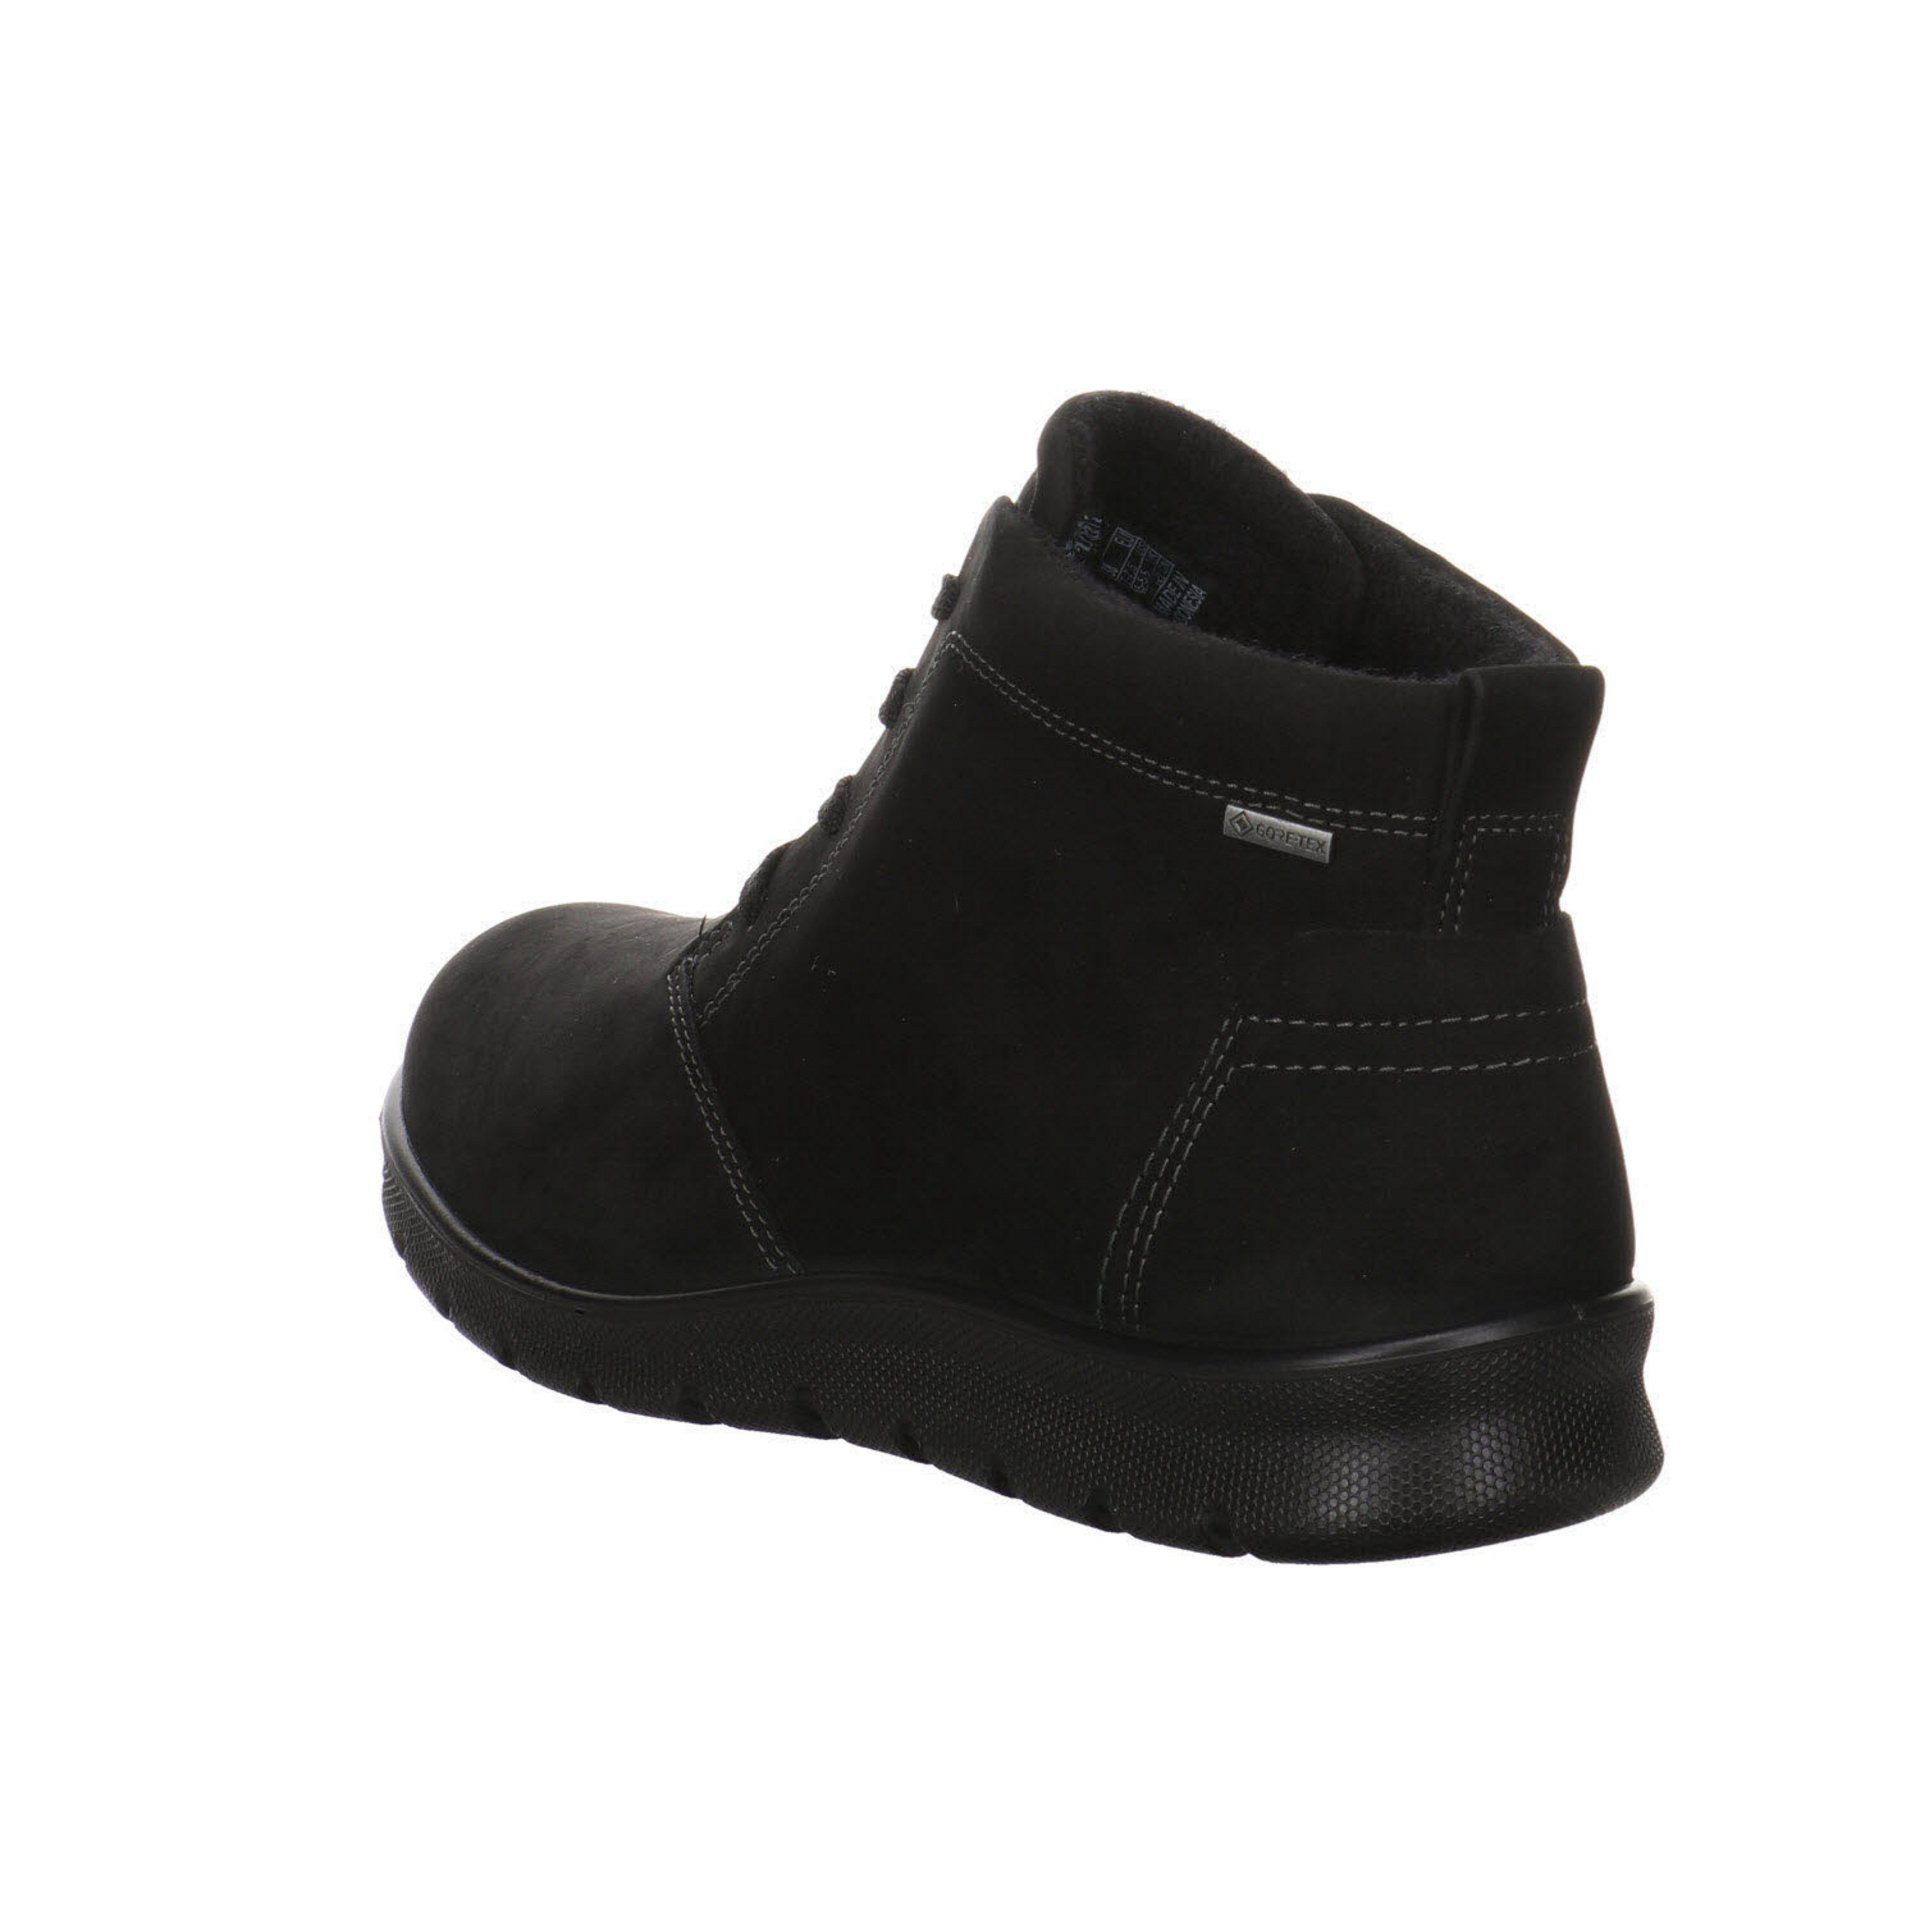 Damen Ecco black Boots Nubukleder Stiefeletten Schnürstiefelette Schuhe Babett